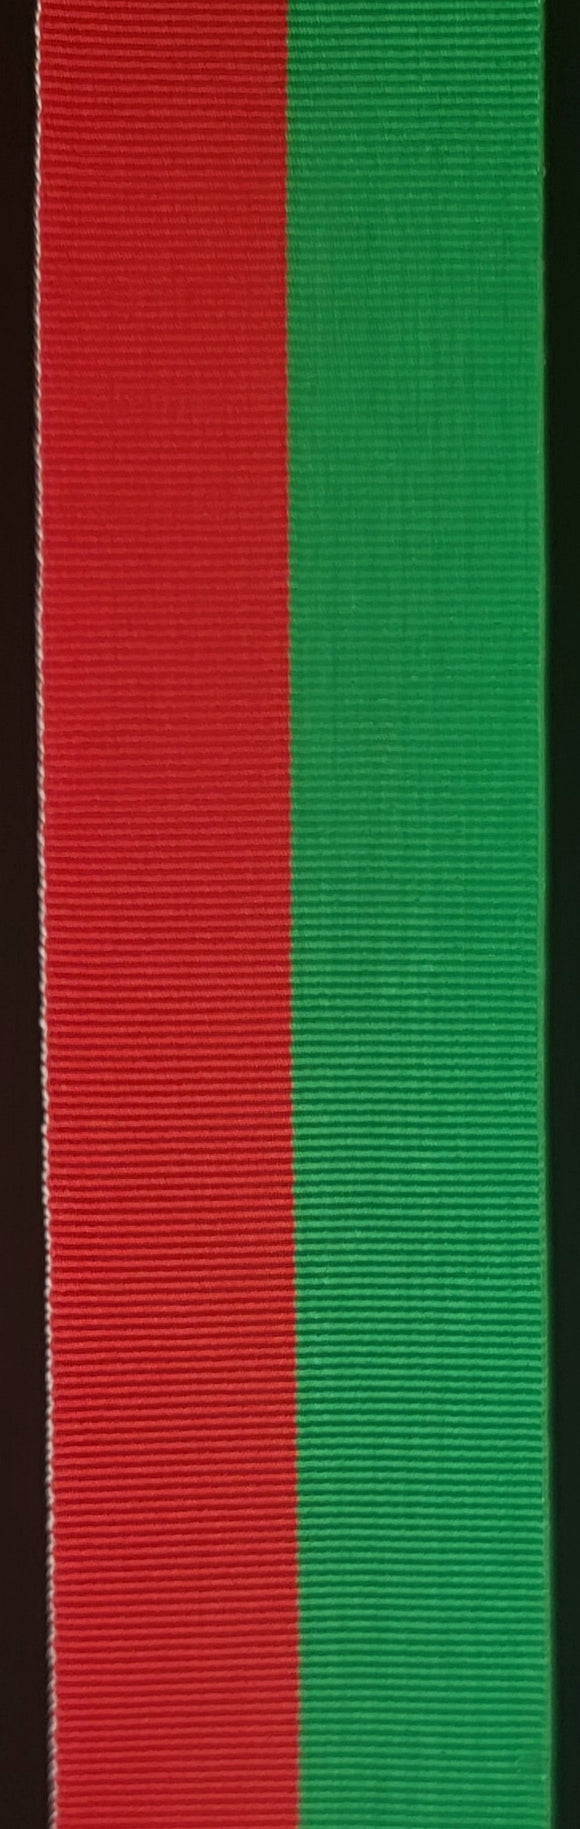 Ribbon, Major General Howard Cadet Medal